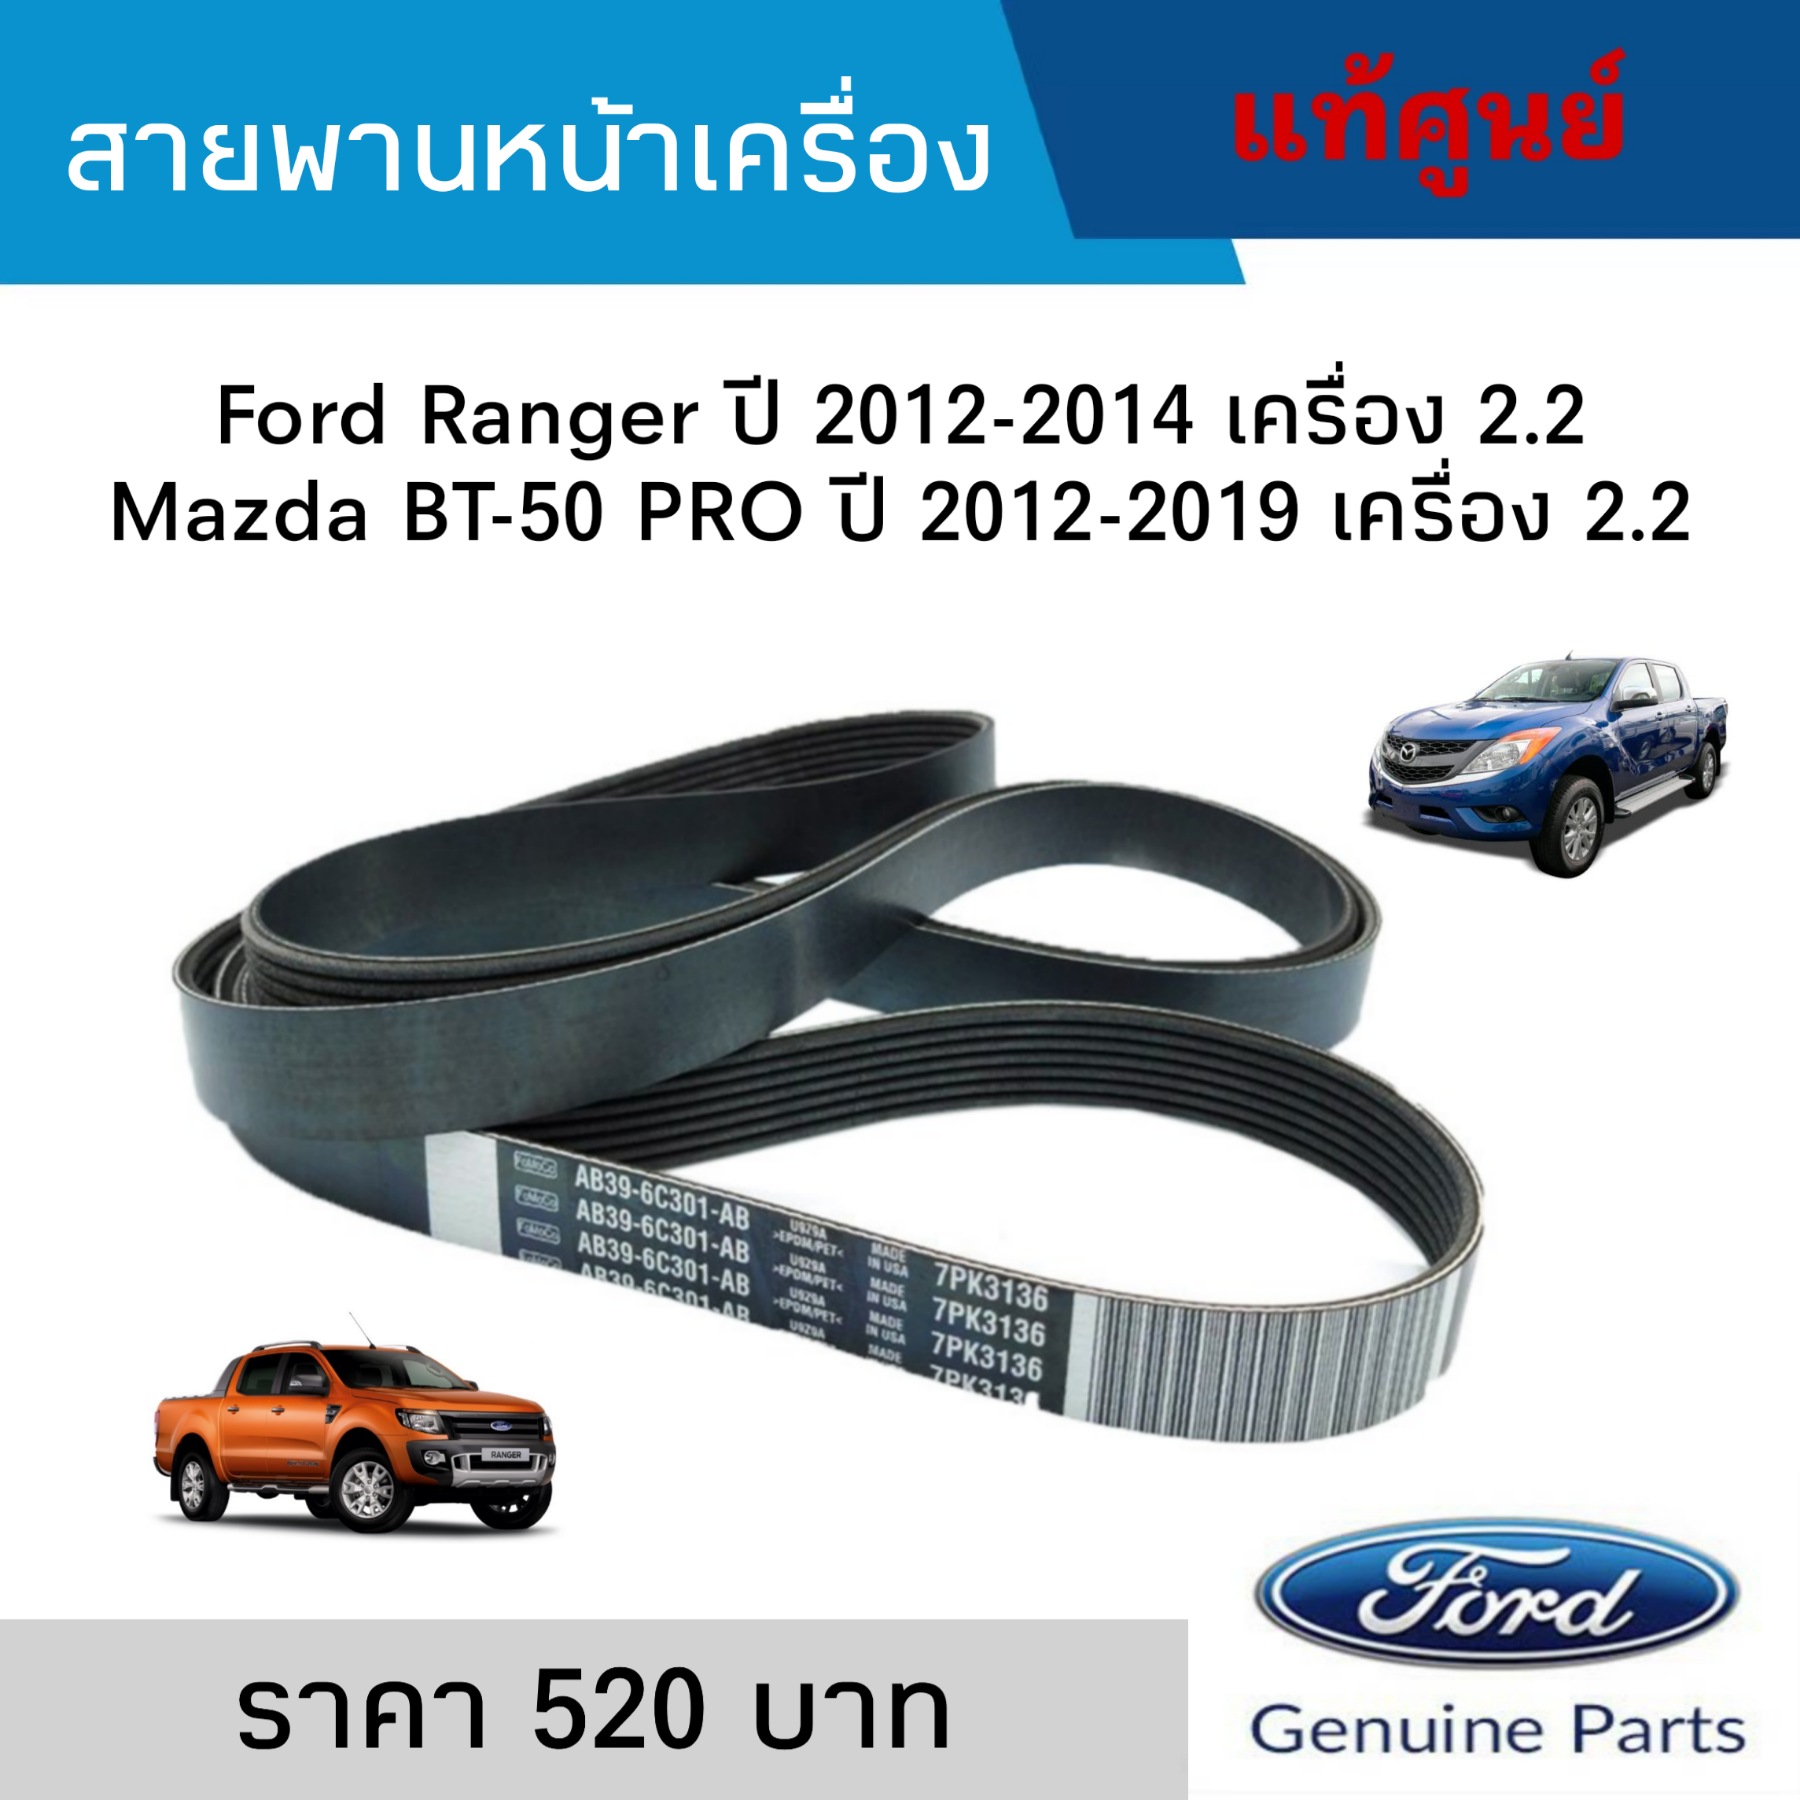 สายพานหน้าเครื่อง Ford Ranger ปี 2012-2014 เครื่อง 2.2, Mazda BT-50 PRO ปี 2012-2019 เครื่อง 2.2 แท้ศูนย์